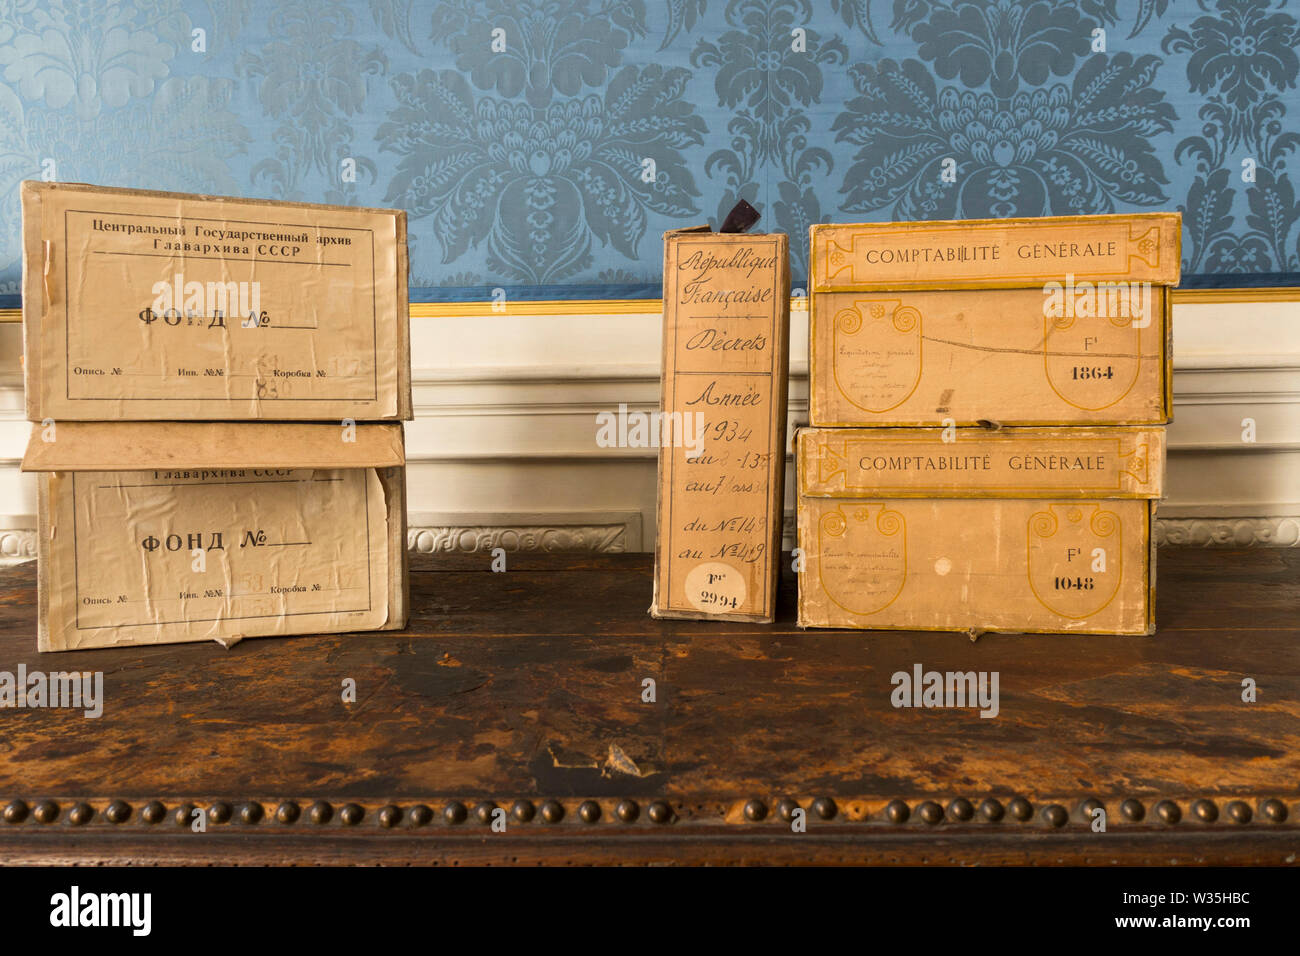 Cajas antiguas en el interior del edificio de Archivos Nacionales, ex Hotel de Soubise, museo de la historia de Francia, París, Francia. Foto de stock